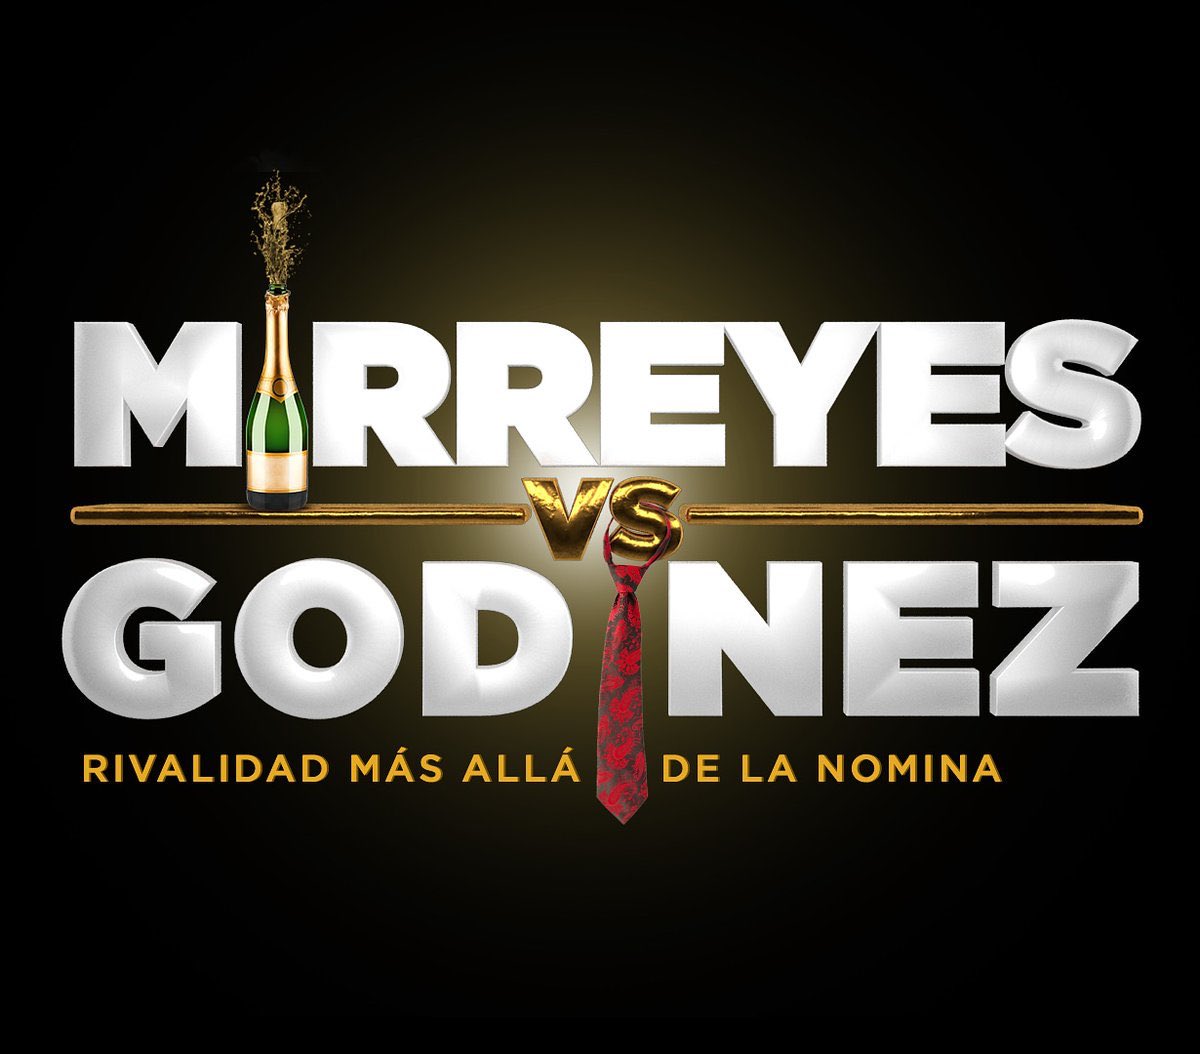 Vi #MirreyesVsGodínez me entretuvo y divirtió mucho! Dentro de la comedia mexicana actual es de lo más rescatable, no dudaría que ocurriera con los personajes algo similar a los Nobles de permanecer en la memoria colectiva de muchos. Veanla!